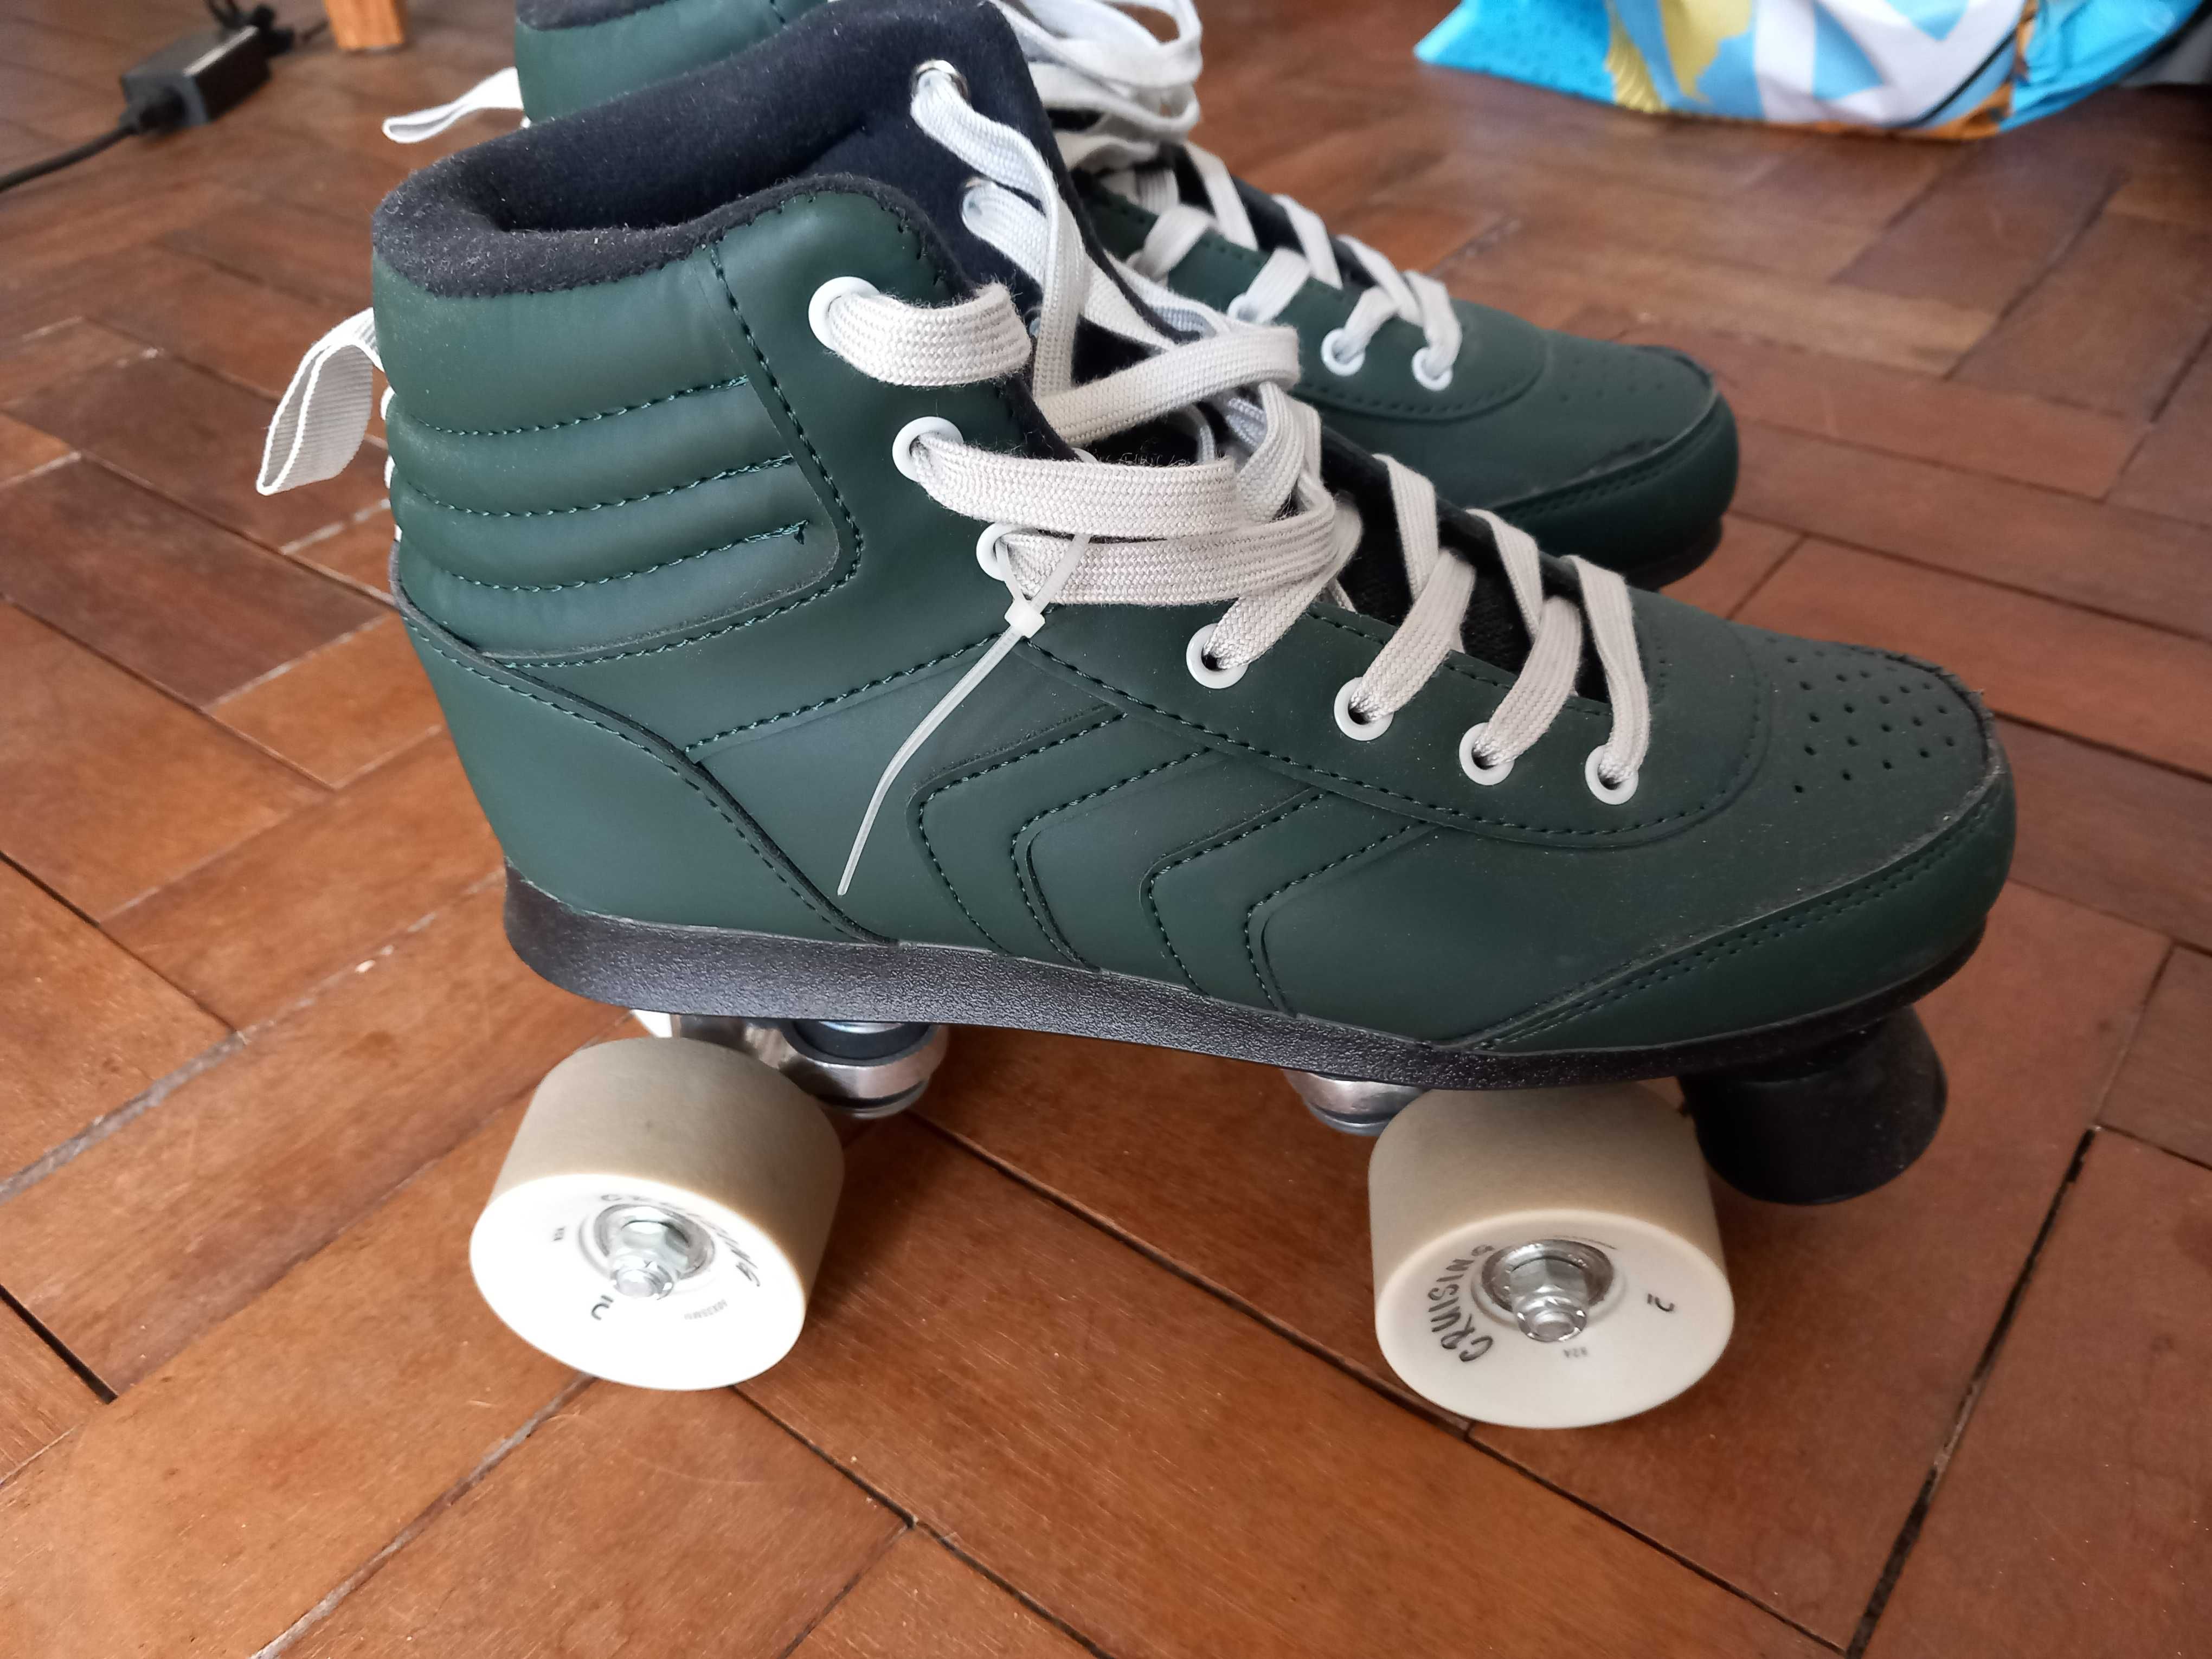 Patins skating shoes